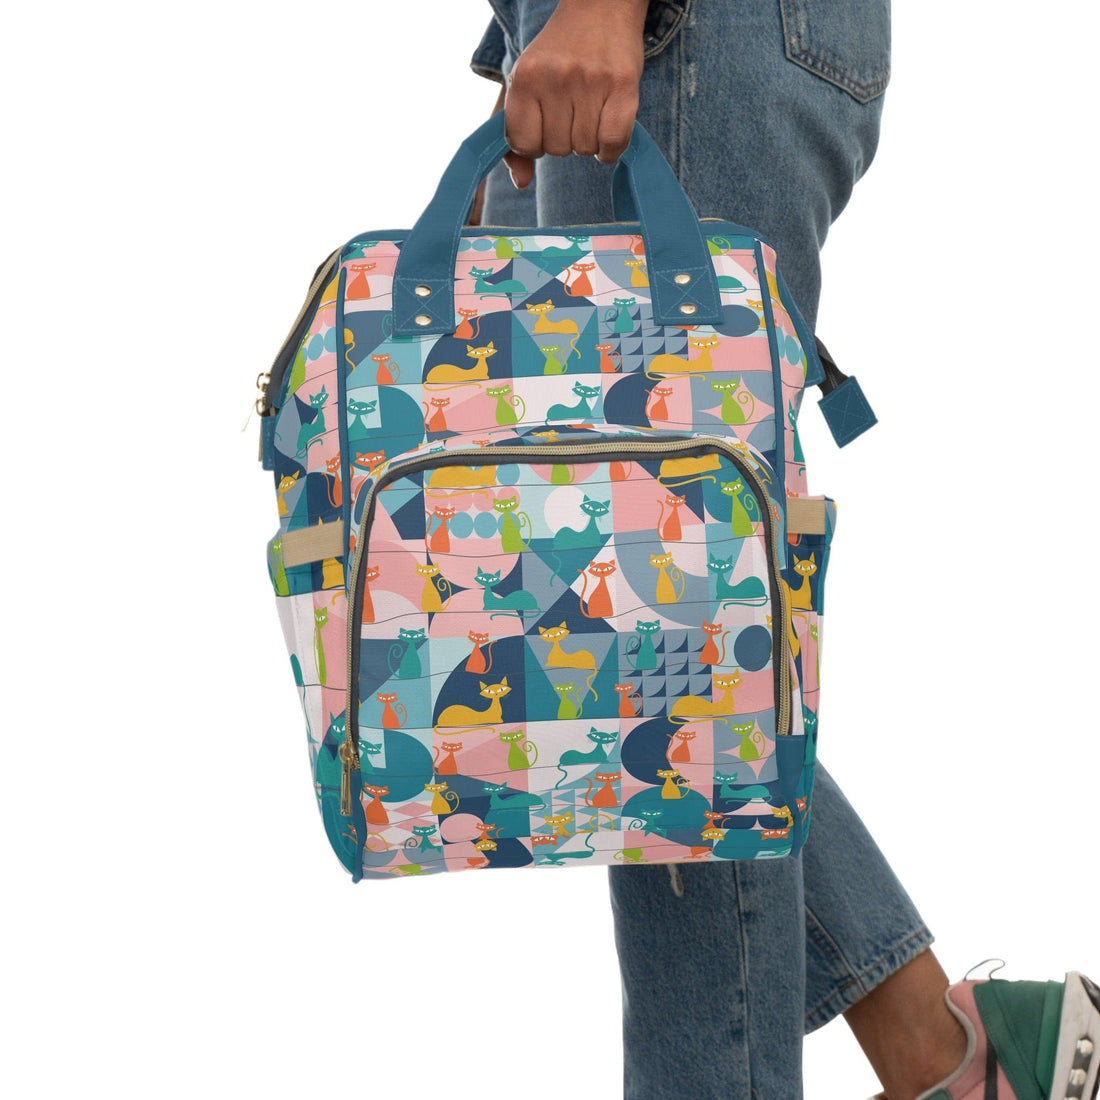 Kate McEnroe New York Mid Century Modern Atomic Cat Multifunctional Backpack, Diaper Bag, Weekender Bag, Carry - on Luggage Bag, Multipurpose BackpackDiaper Bags13038058879203662263